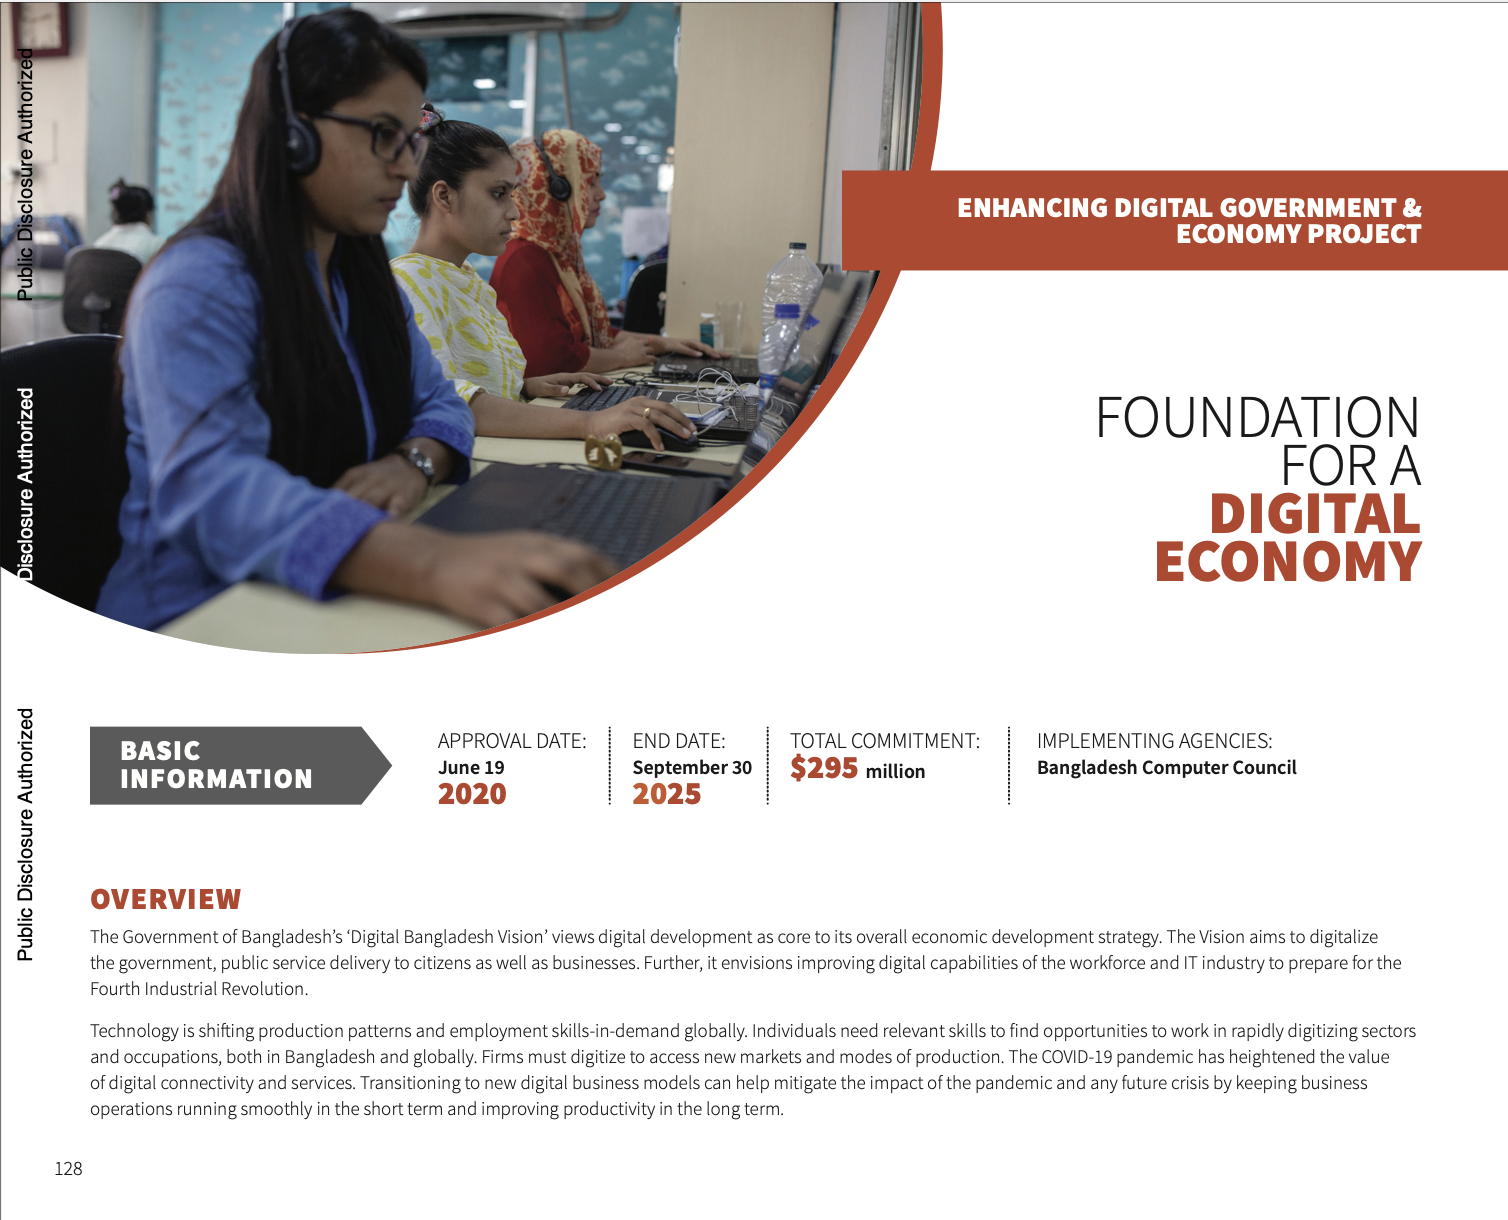 Bangladesh: Foundation for a Digital Economy